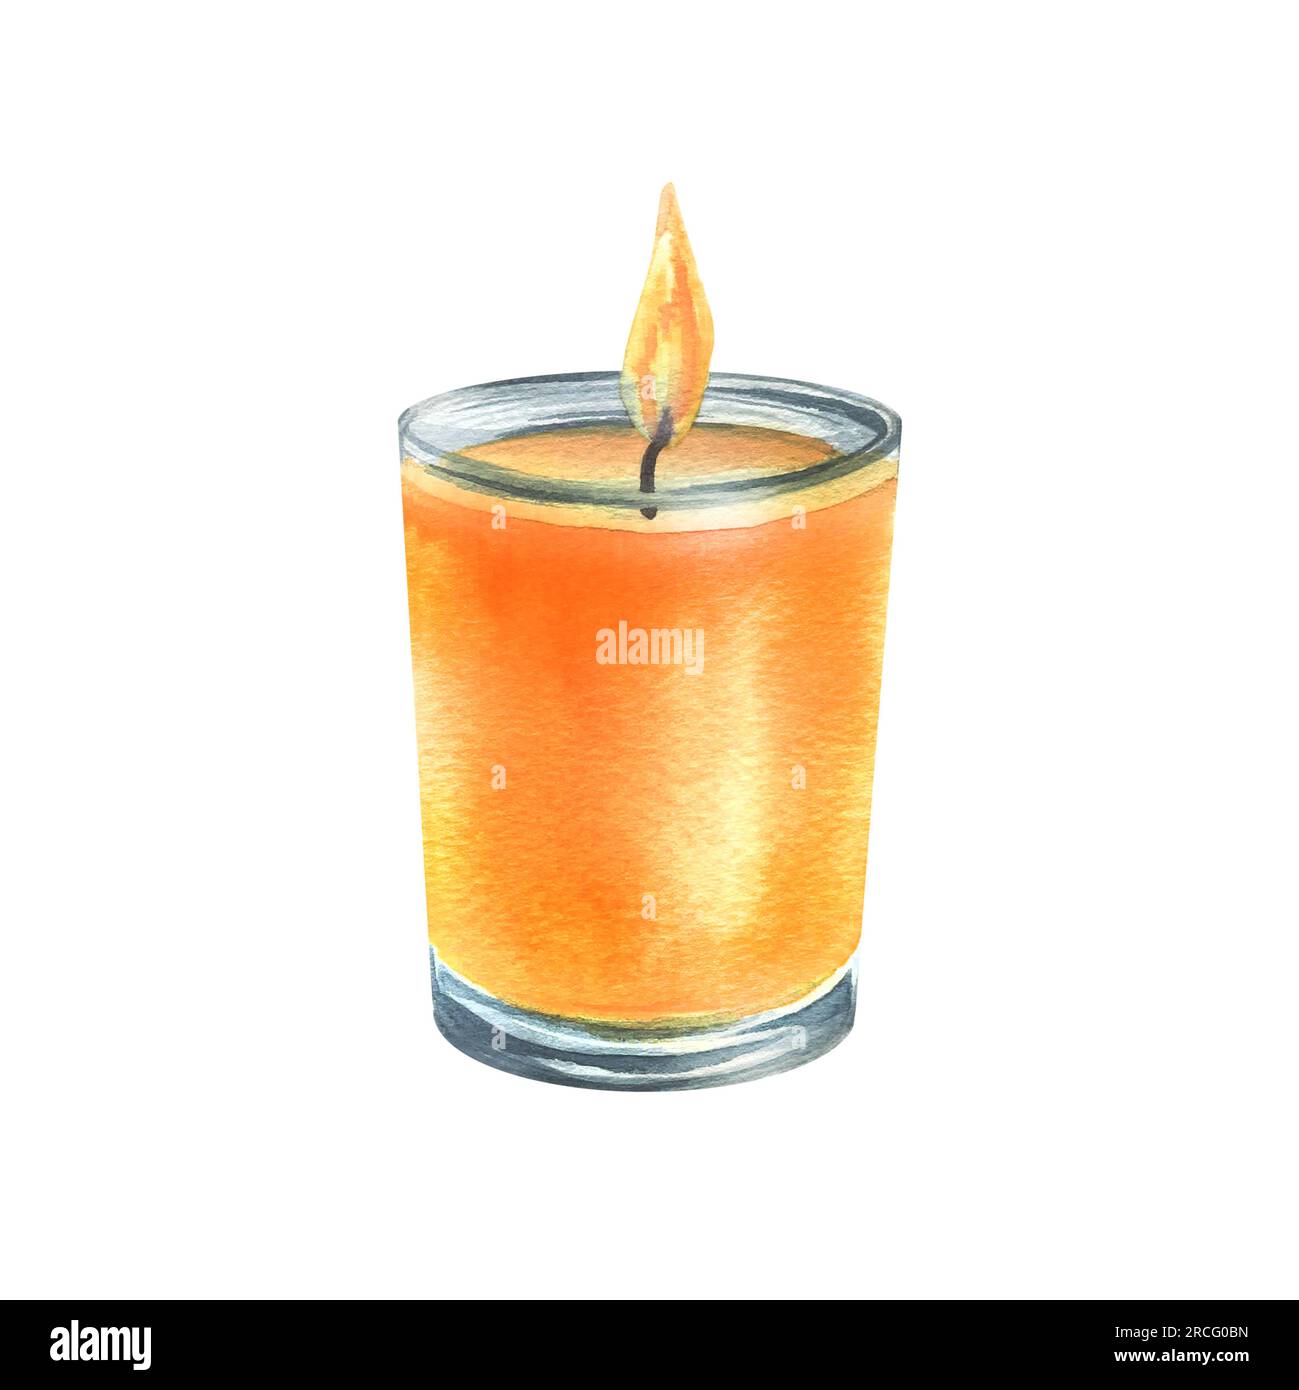 Bougie décorative orange dans un bocal en verre avec flamme de feu.  Illustration à l'aquarelle dessinée à la main. Objet isolé sur fond blanc  Photo Stock - Alamy